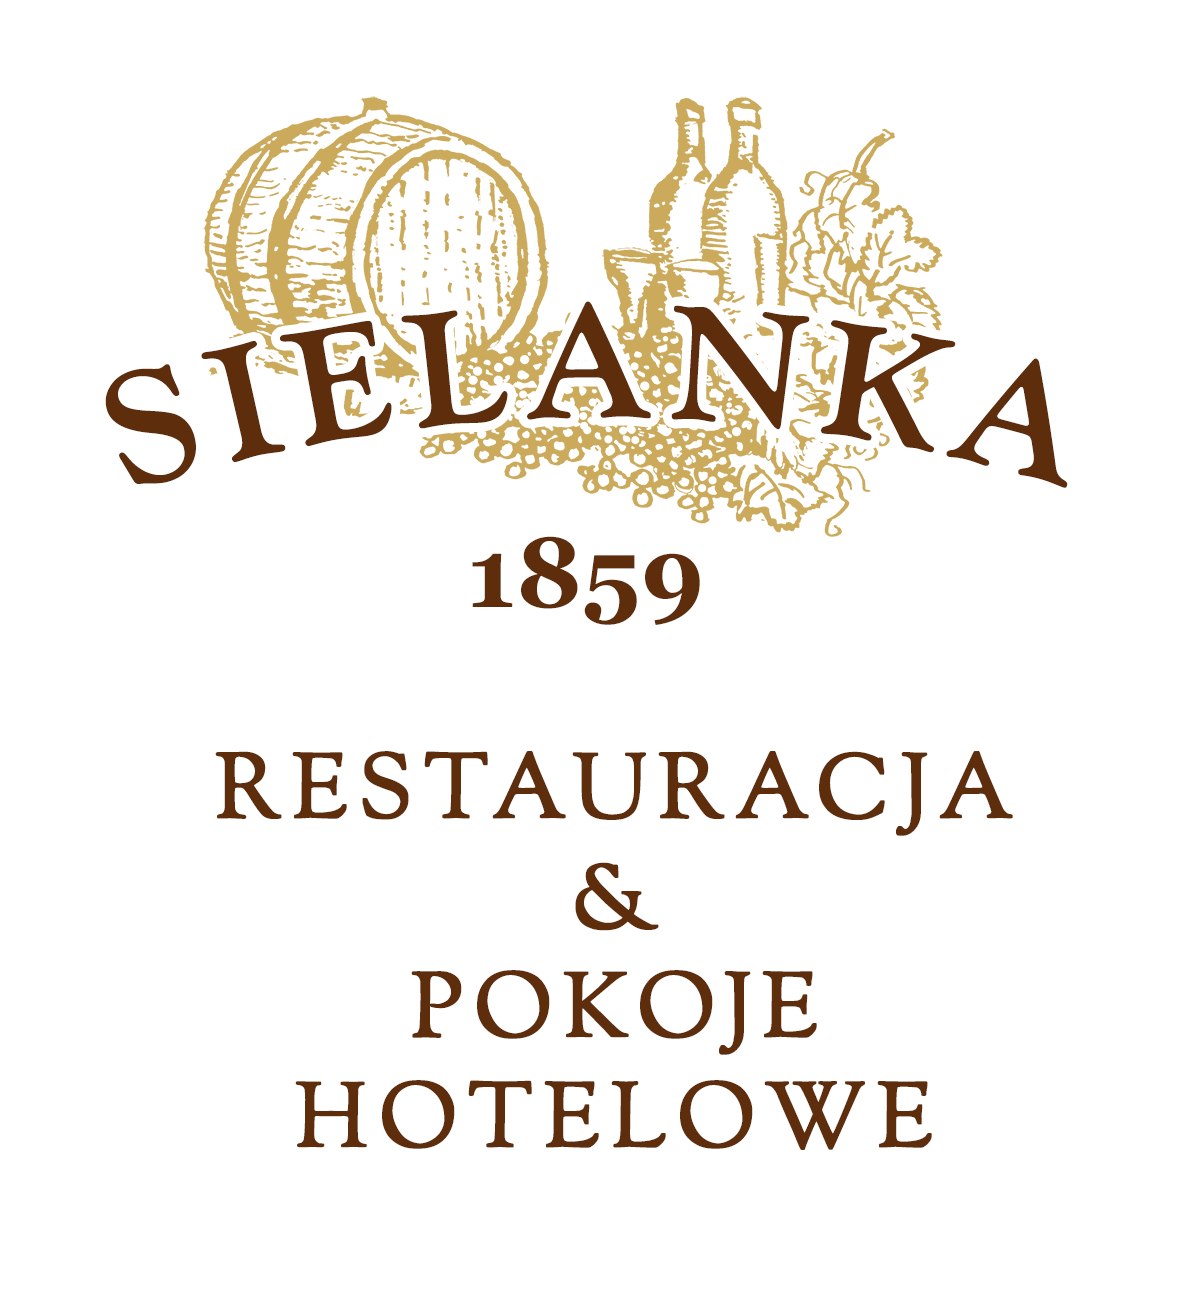 SIELANKA Restauracja & Pokoje Hotelowe w Ustroniu Logo